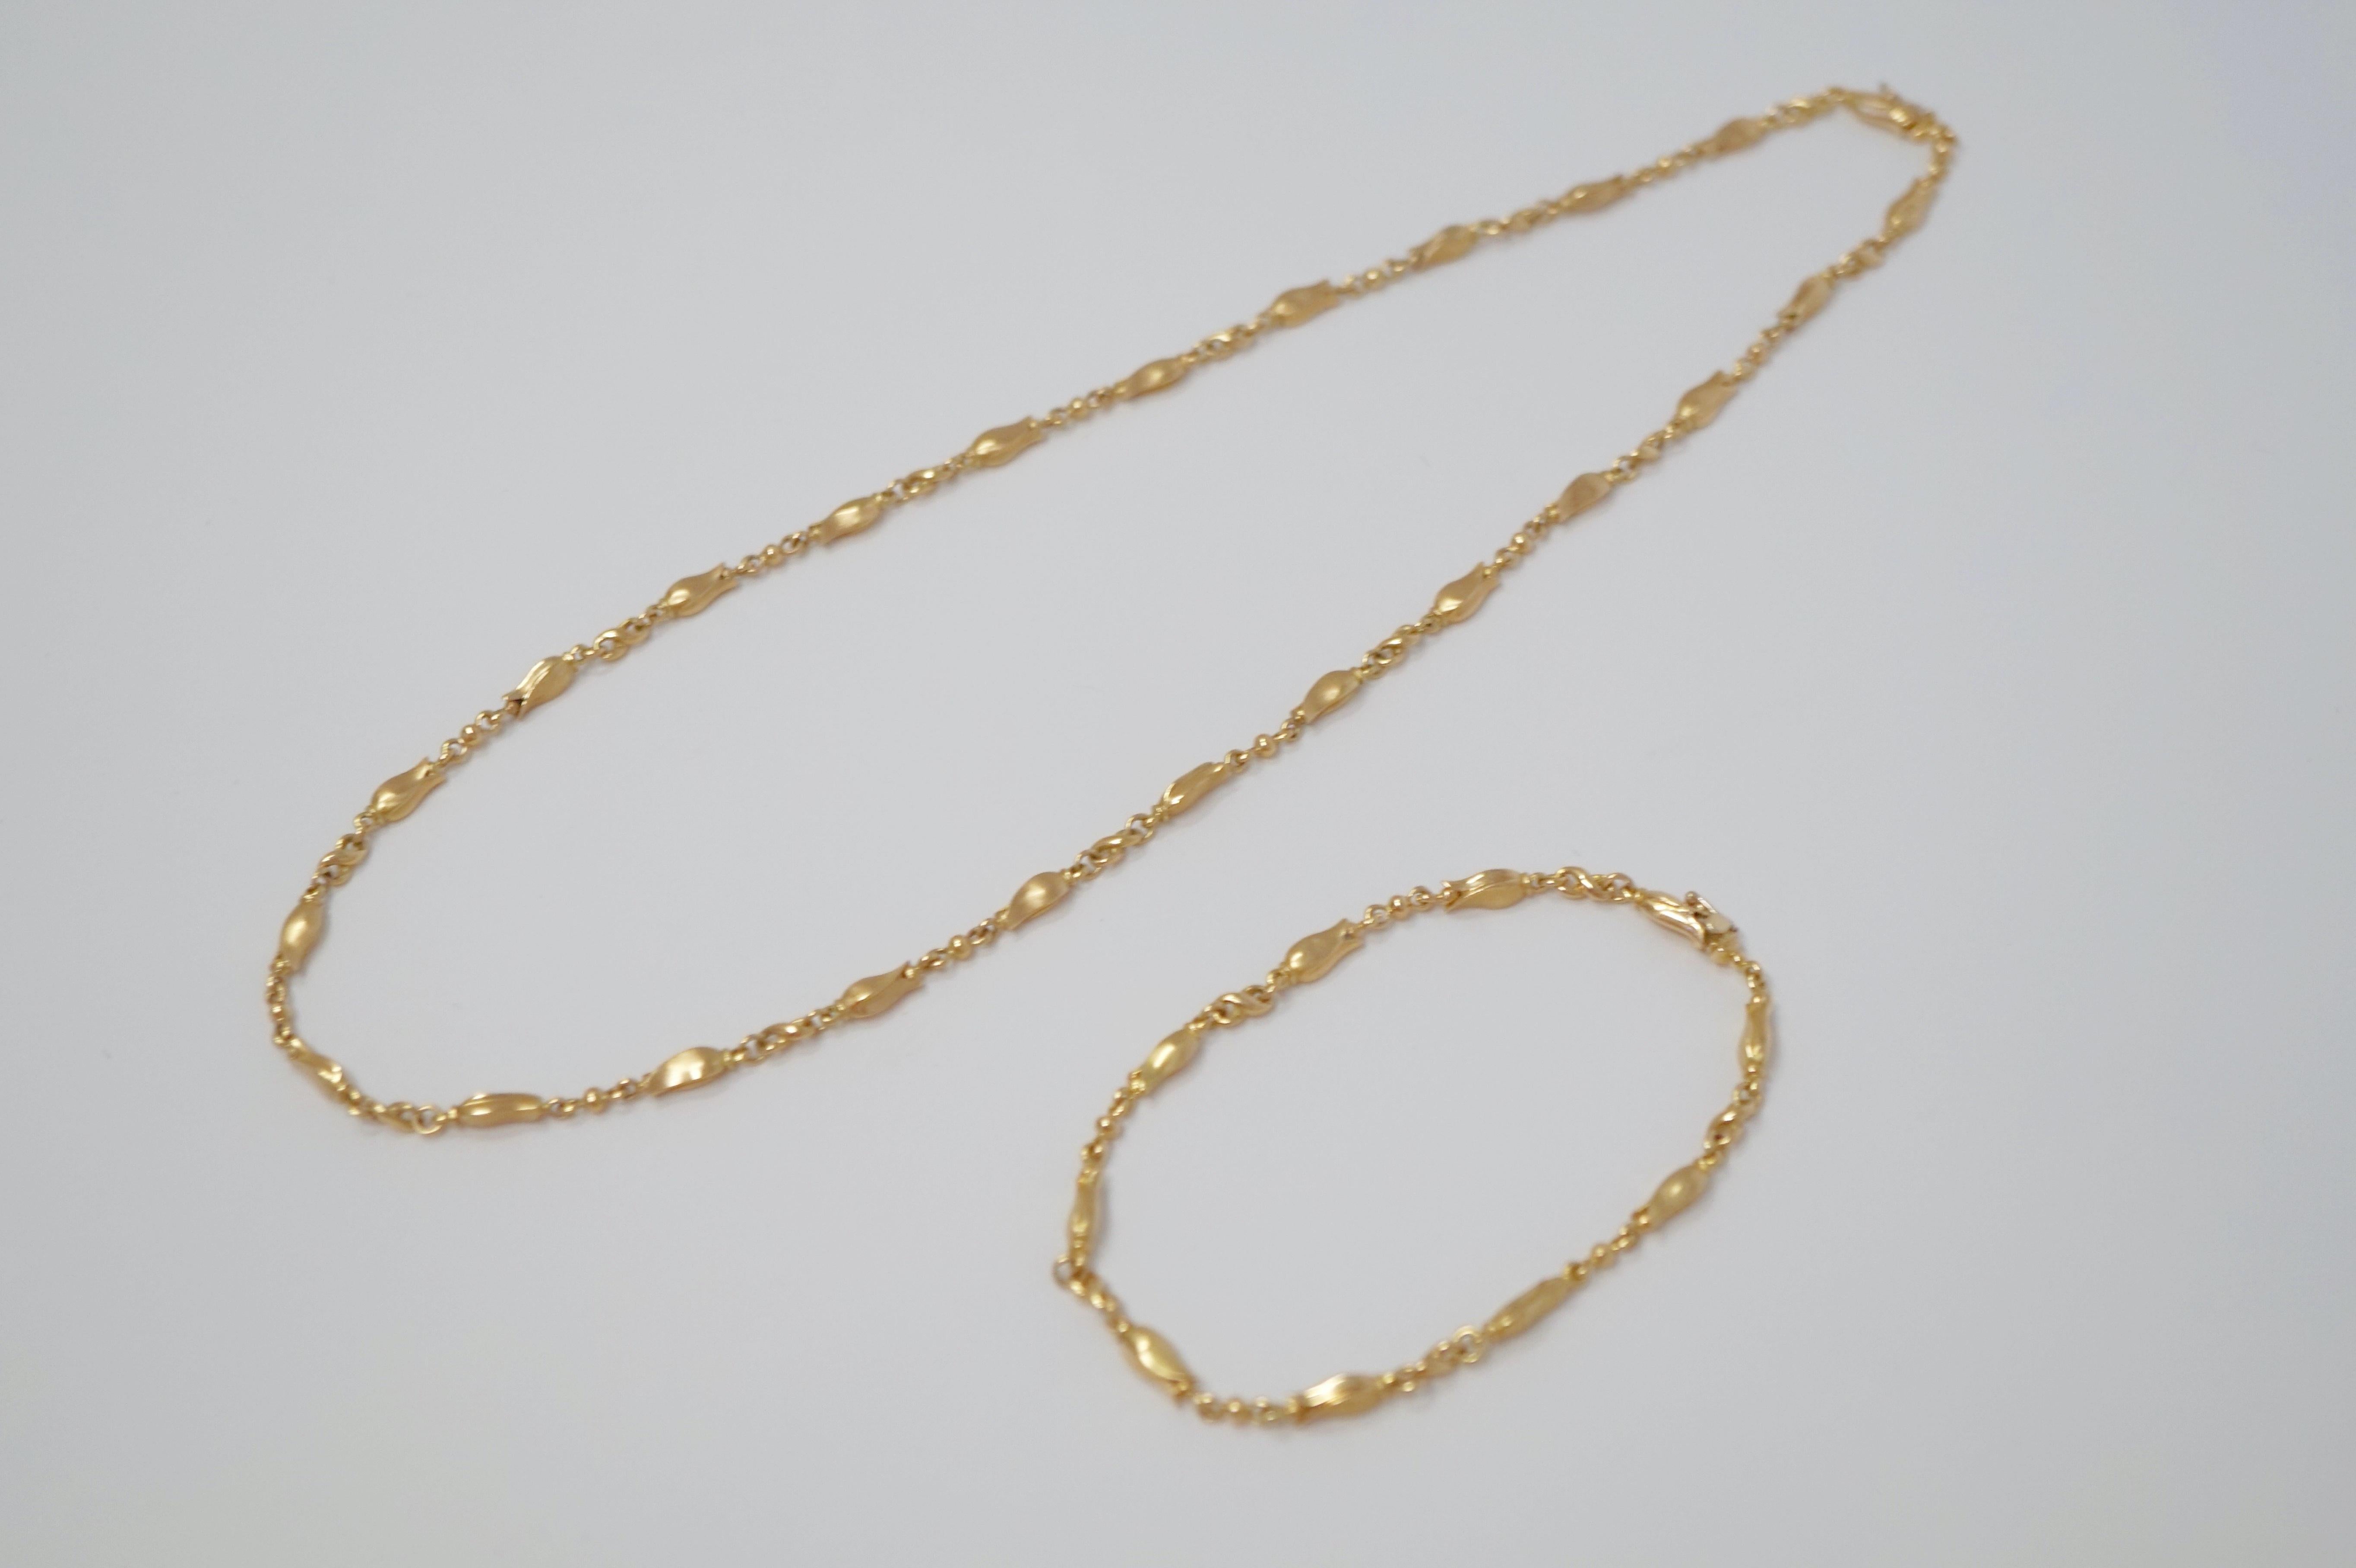 Women's Georg Jensen 18 Karat Gold Necklace and Bracelet Set, Signed